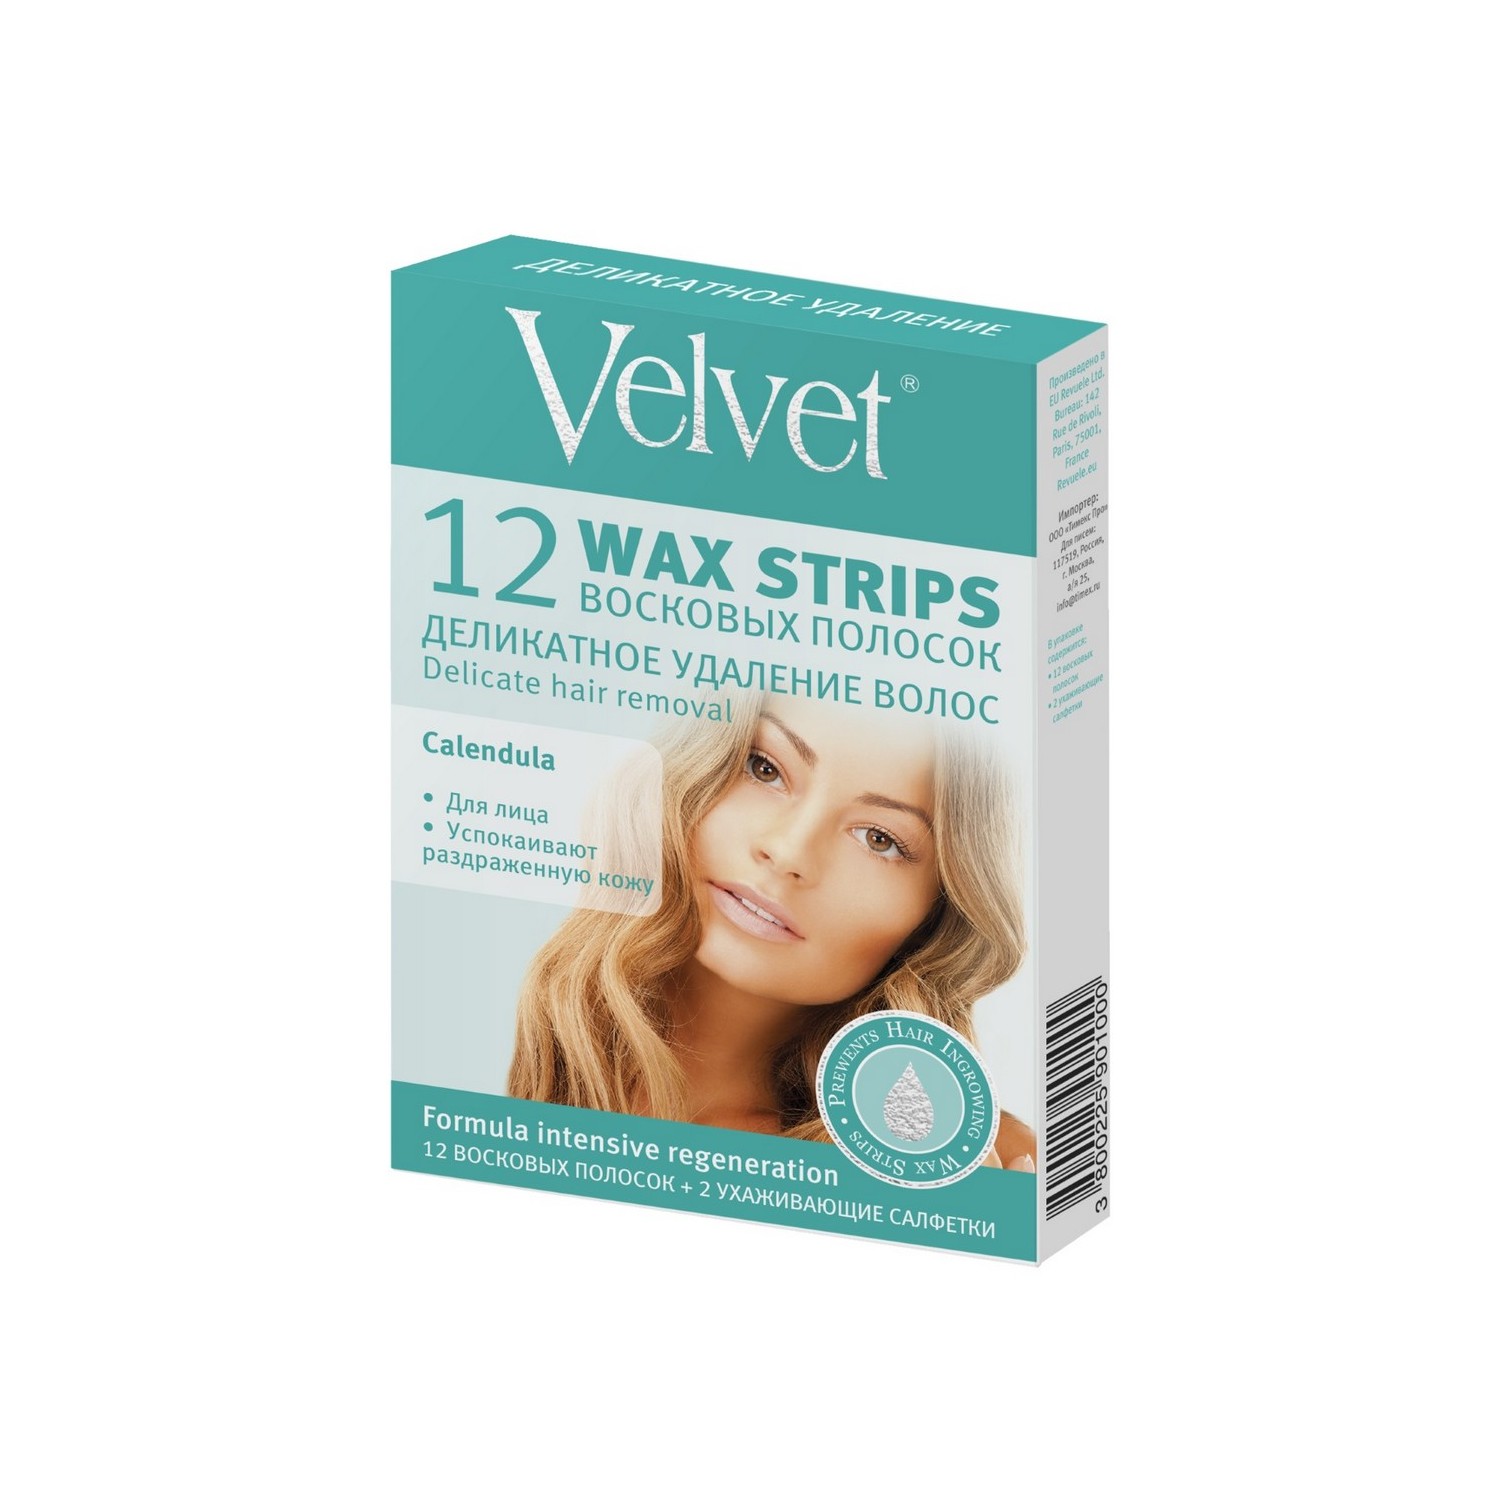 Восковые полоски Velvet для лица Деликатное удаление волос 12 шт - фото 1